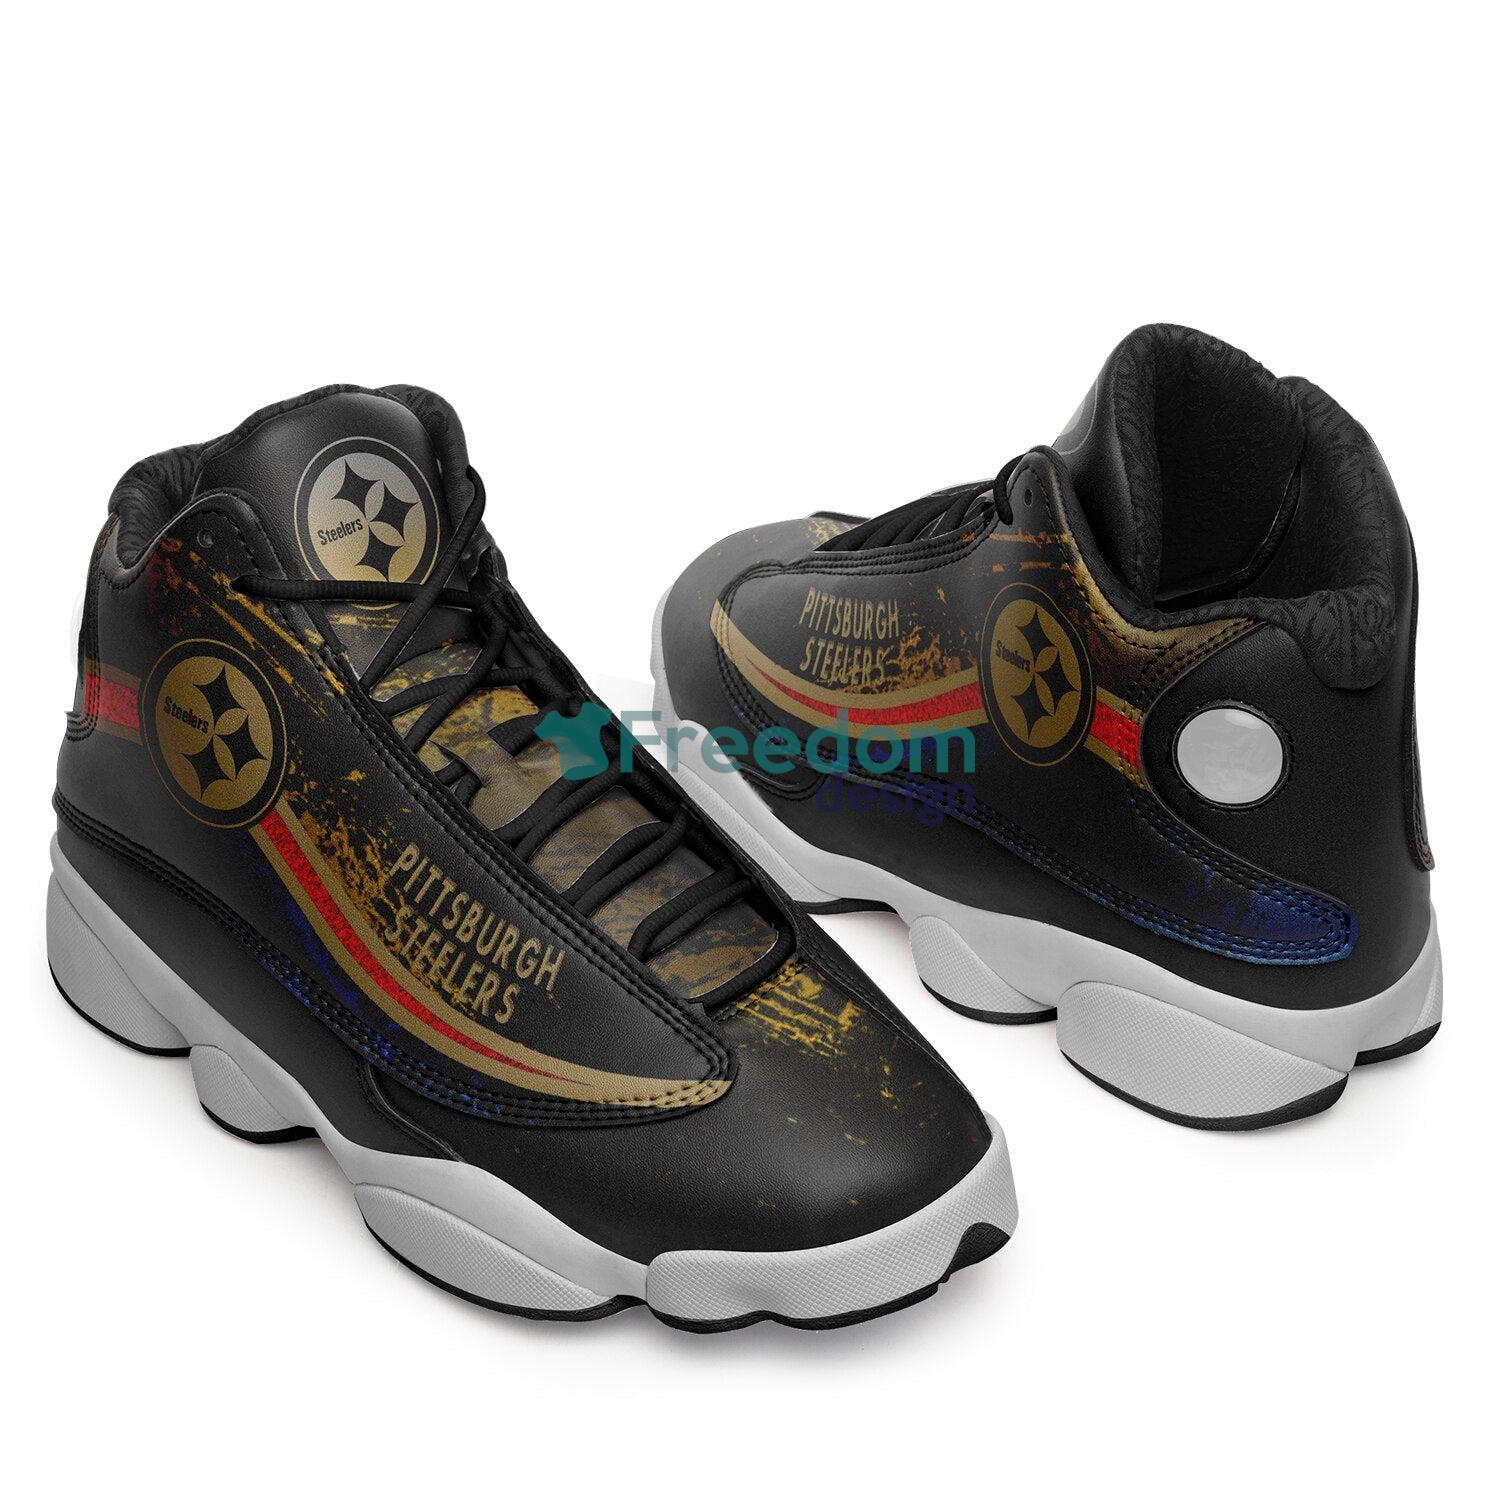 Philadelphia Phillies Team Custom Name Air Jordan 13 Sneaker Shoes For Fans